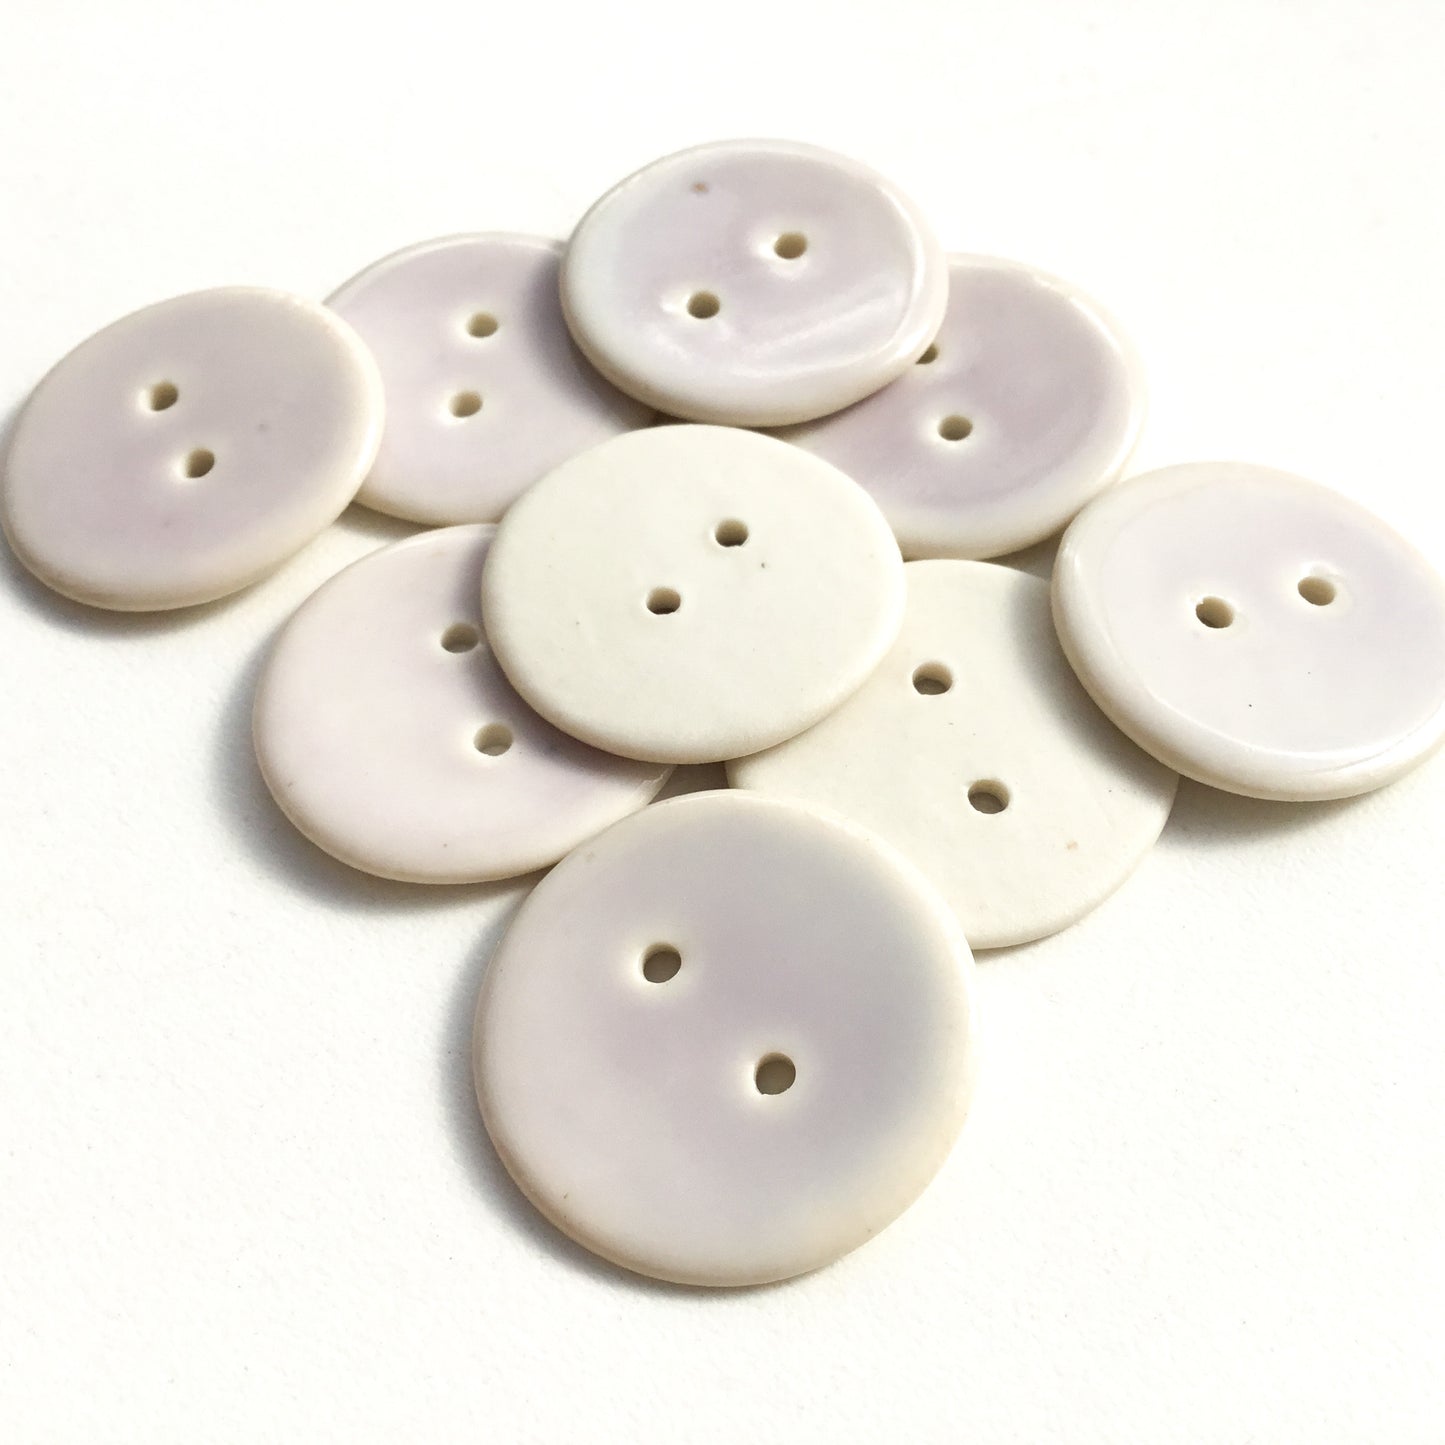 Lightest Purple Porcelain Buttons - 1"